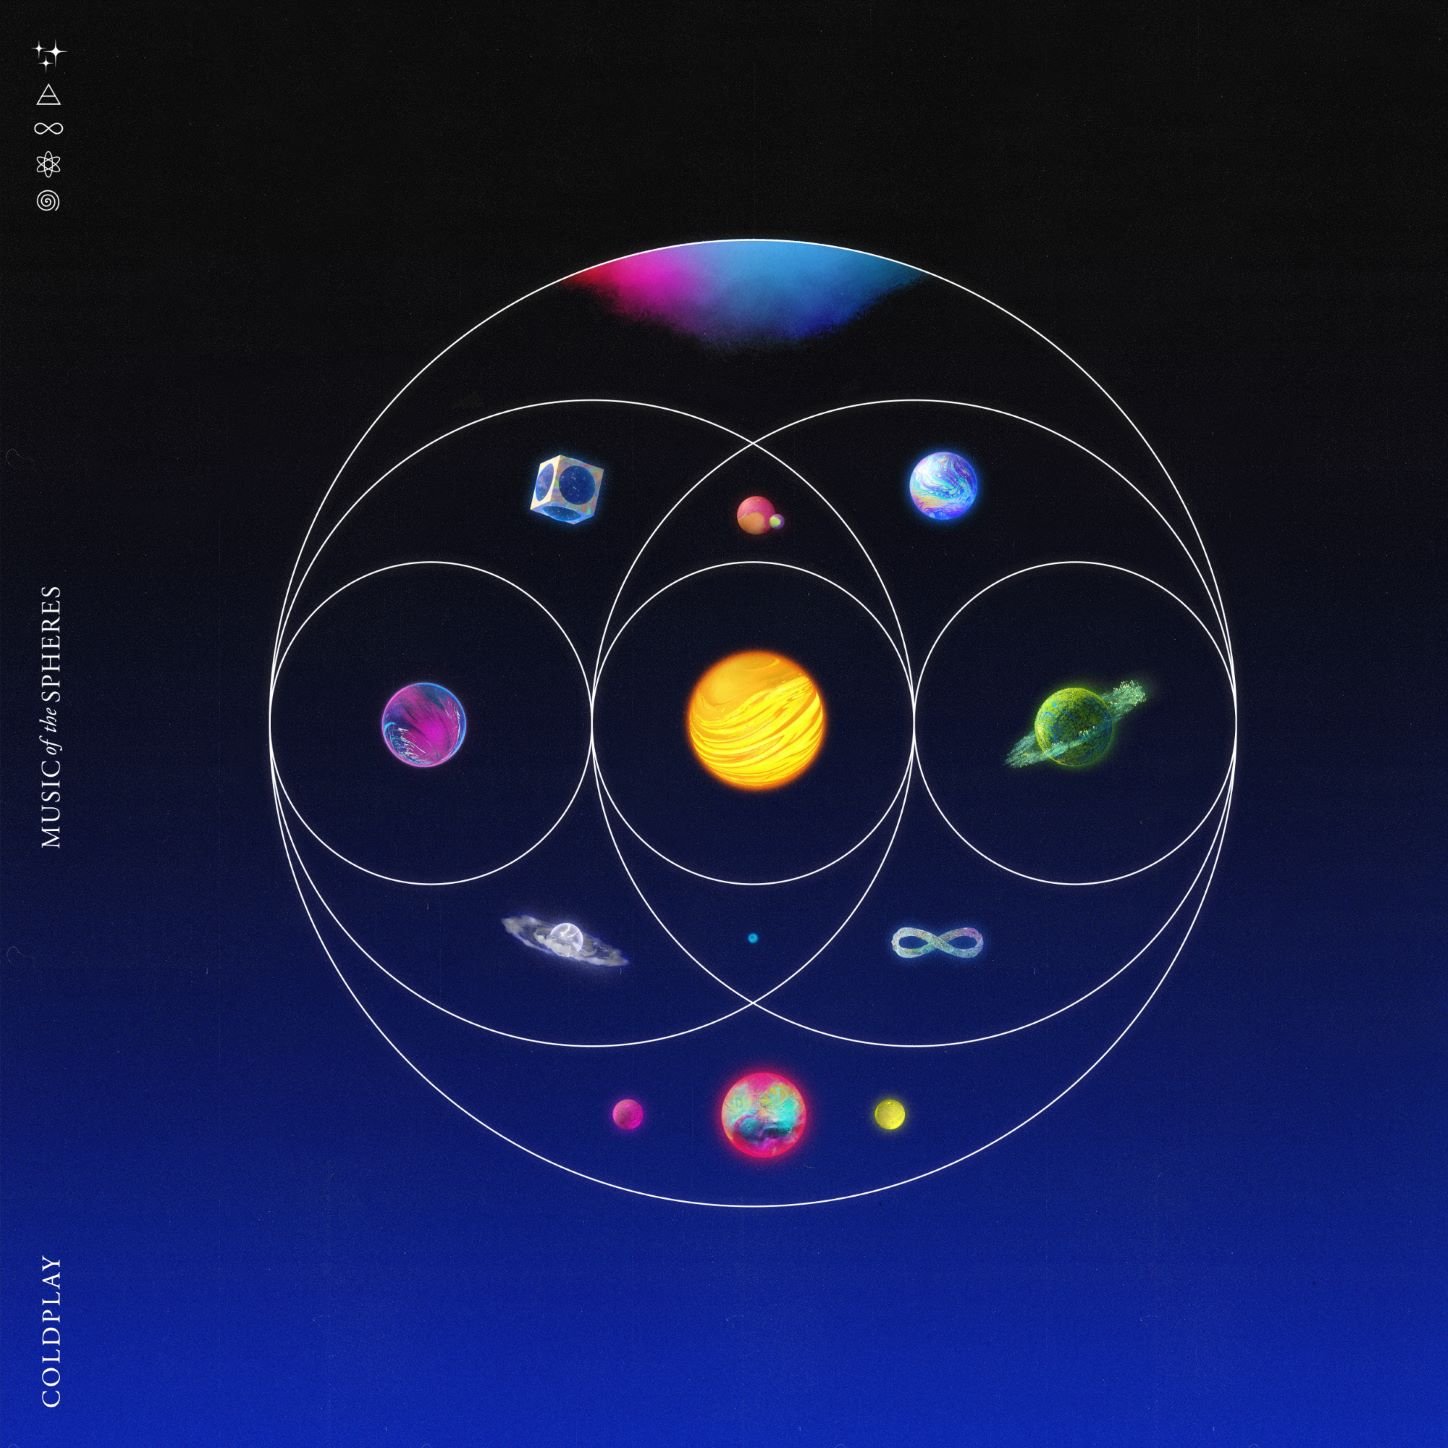 I Coldplay annunciano l’uscita del nuovo album  Music Of The Spheres